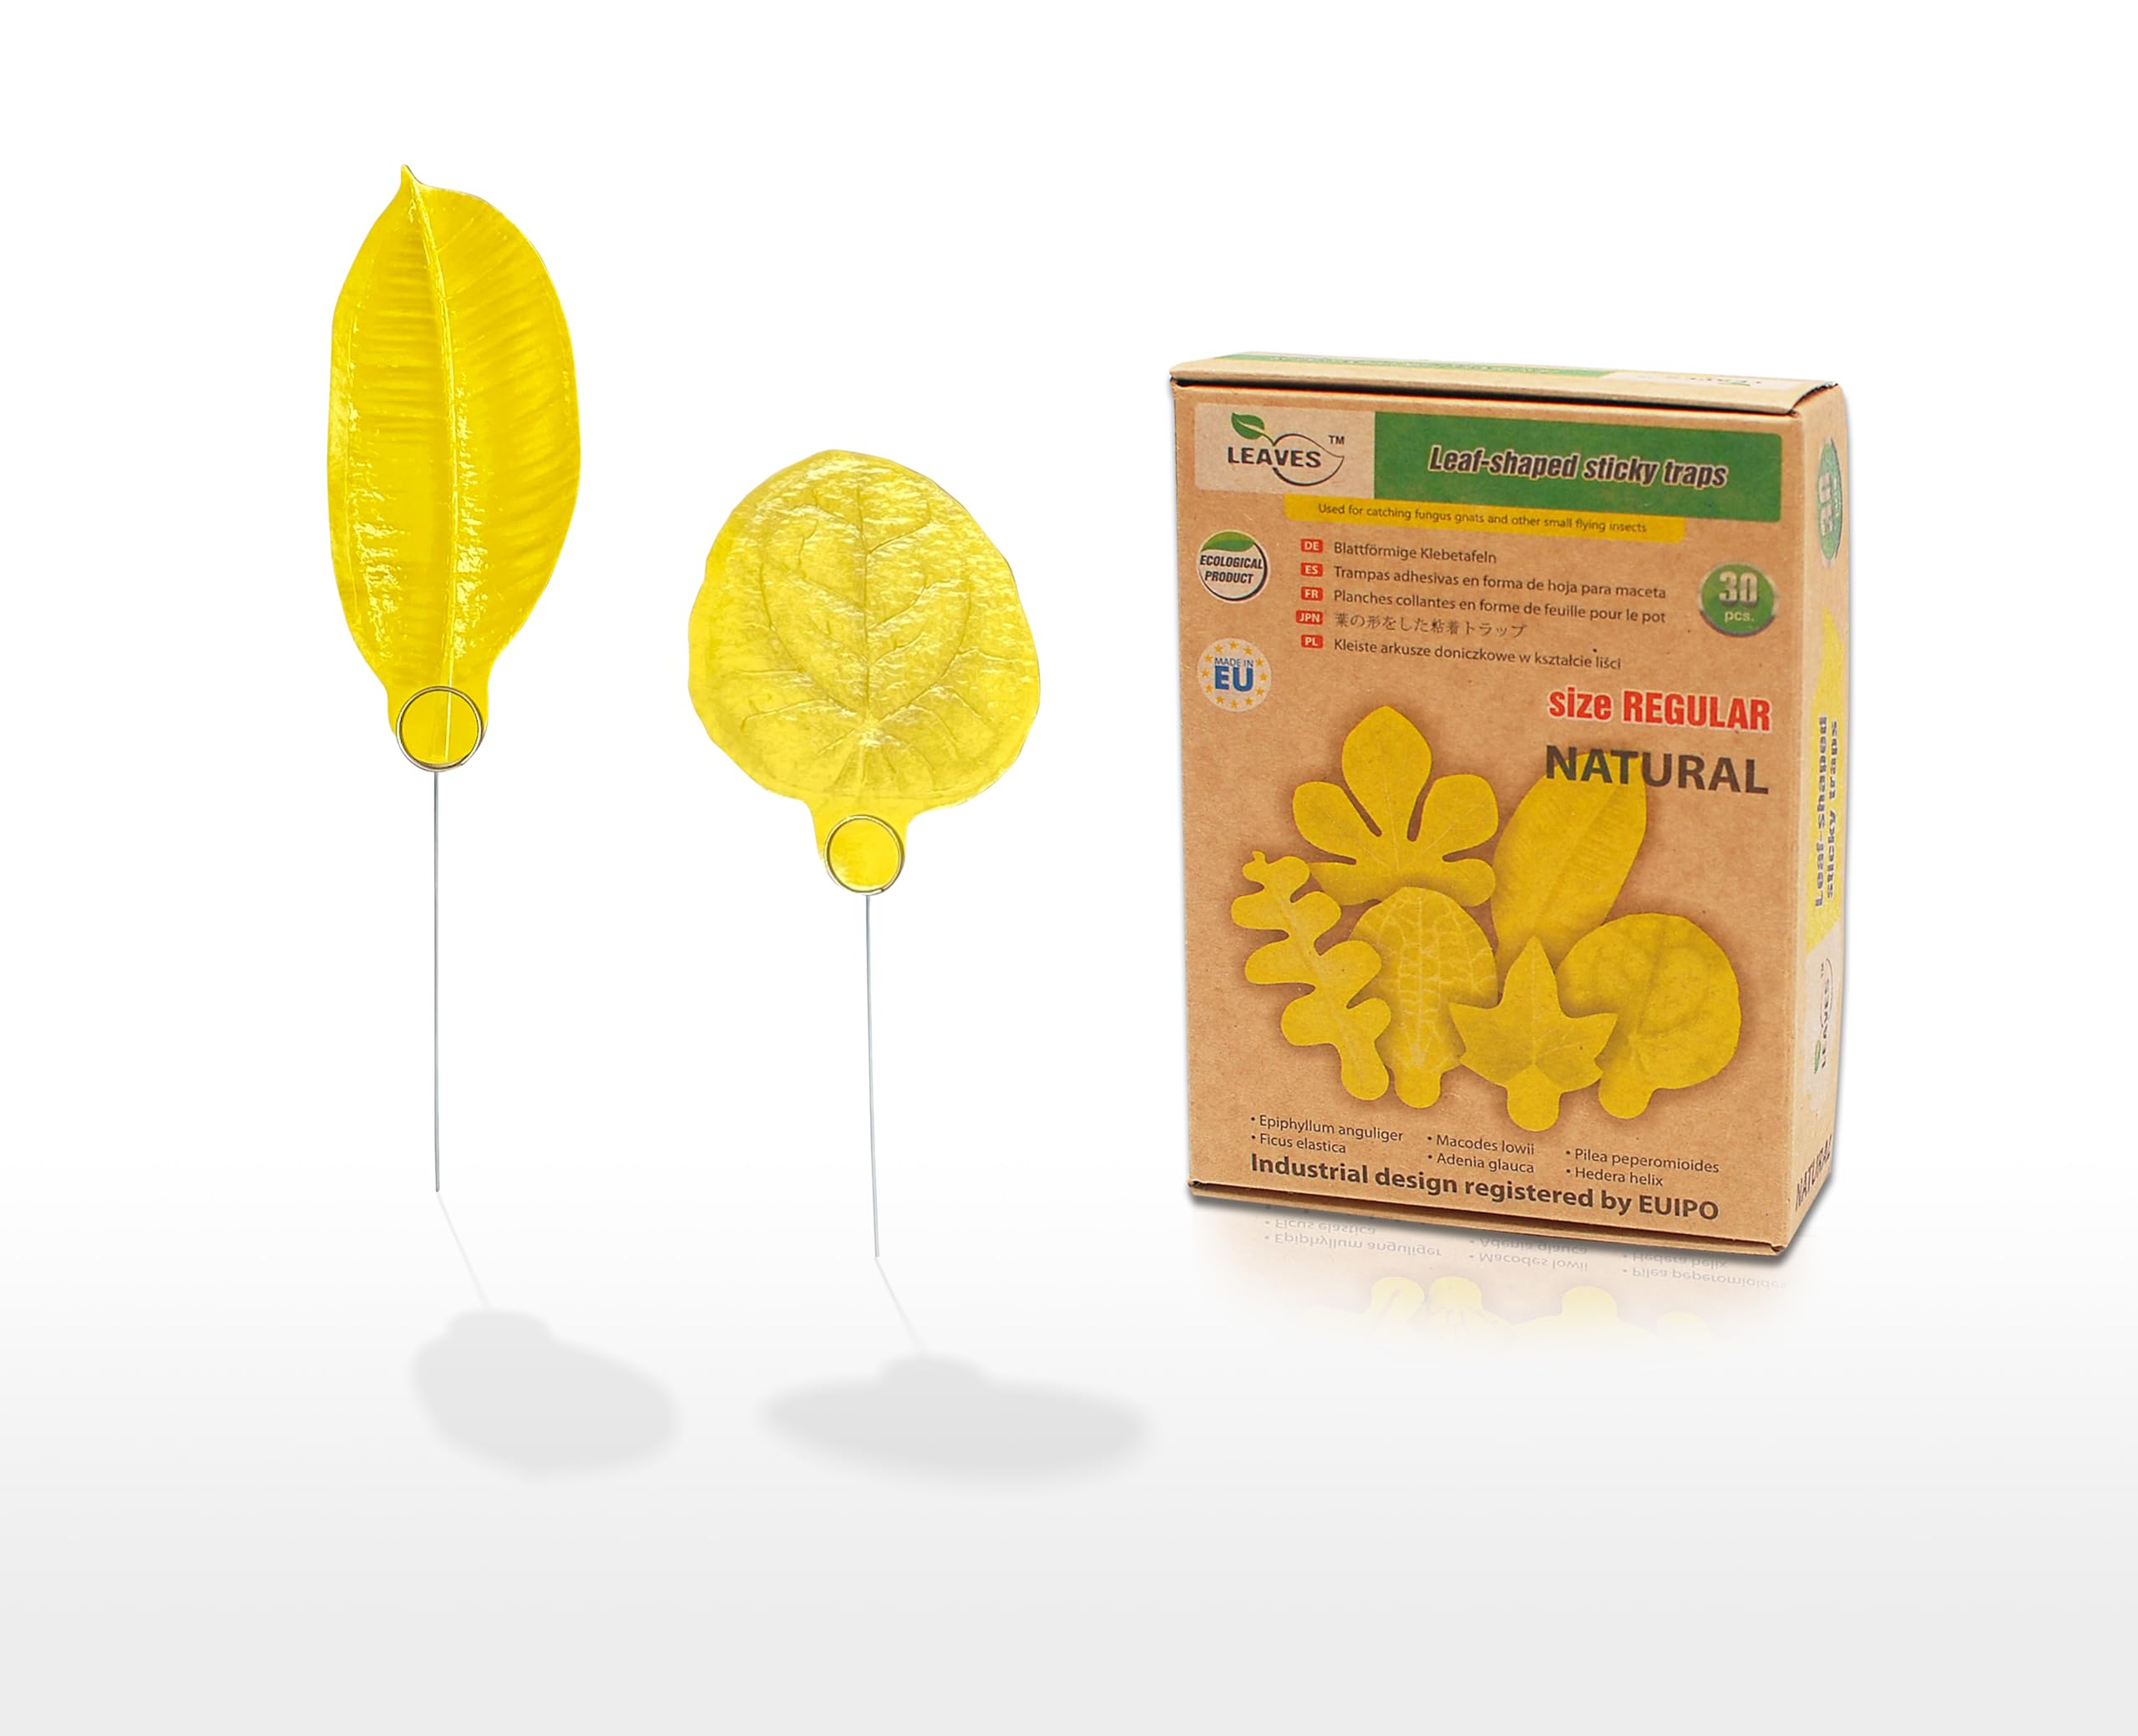 LEAVES 30 STK Gelbsticker Trauermücken Bioprodukt – gelbtafeln gegen trauermückenfür Zimmerpflanzen Schädlingsbekämpfung mehrere Arten Pflanzenkontrolle im Innenbereich.